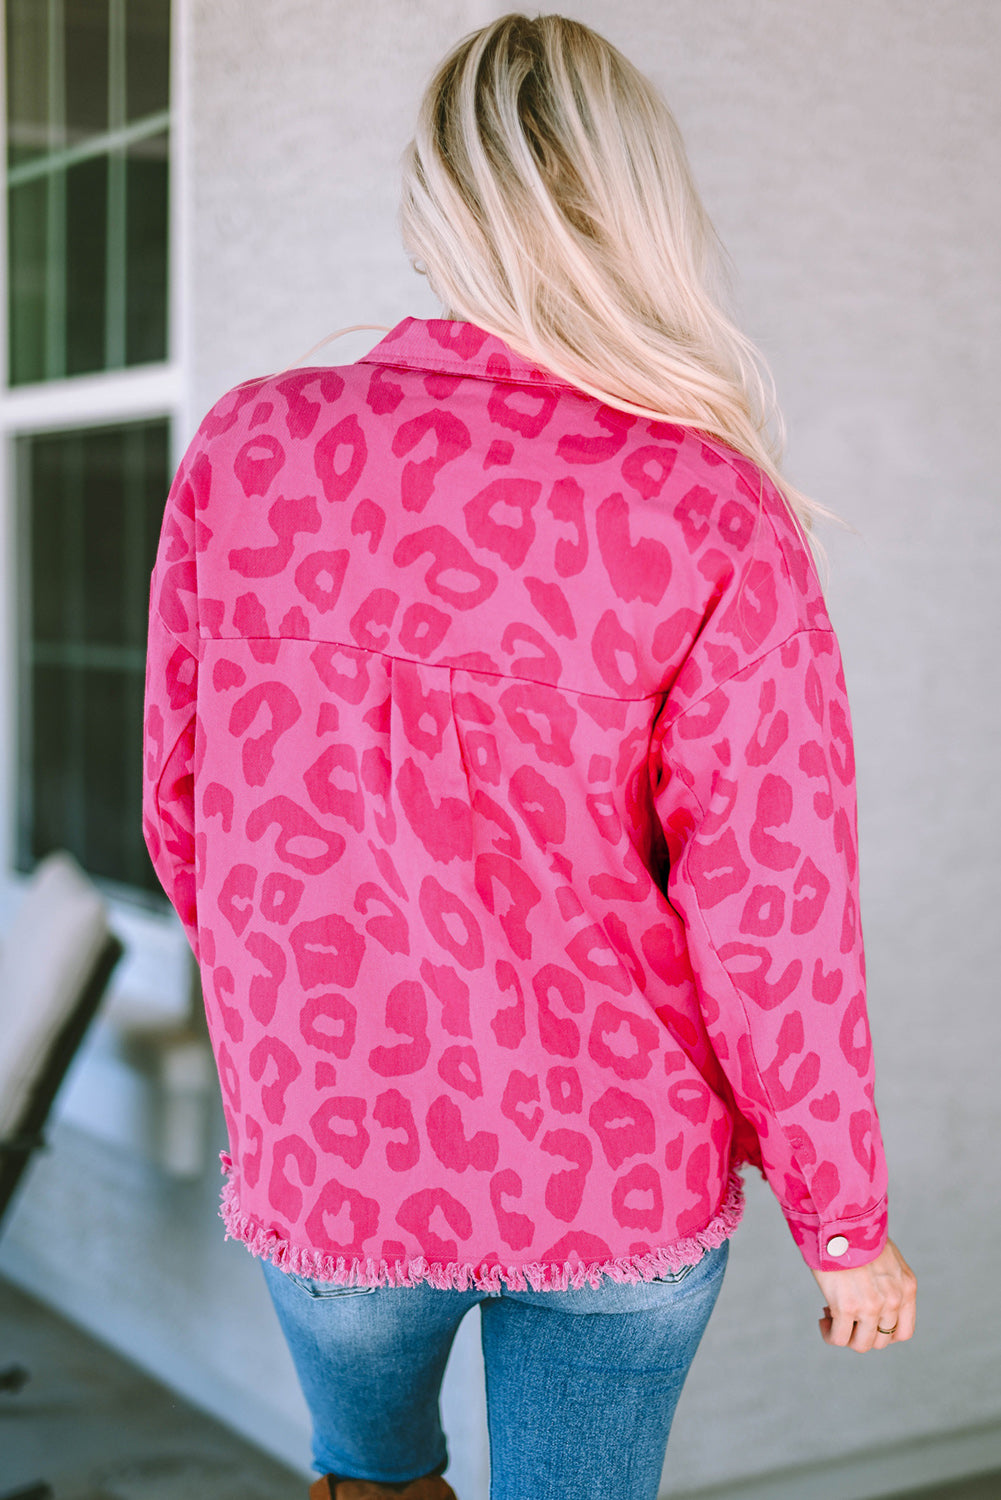 Veste rose à imprimé léopard, poignets boutonnés et ourlet brut